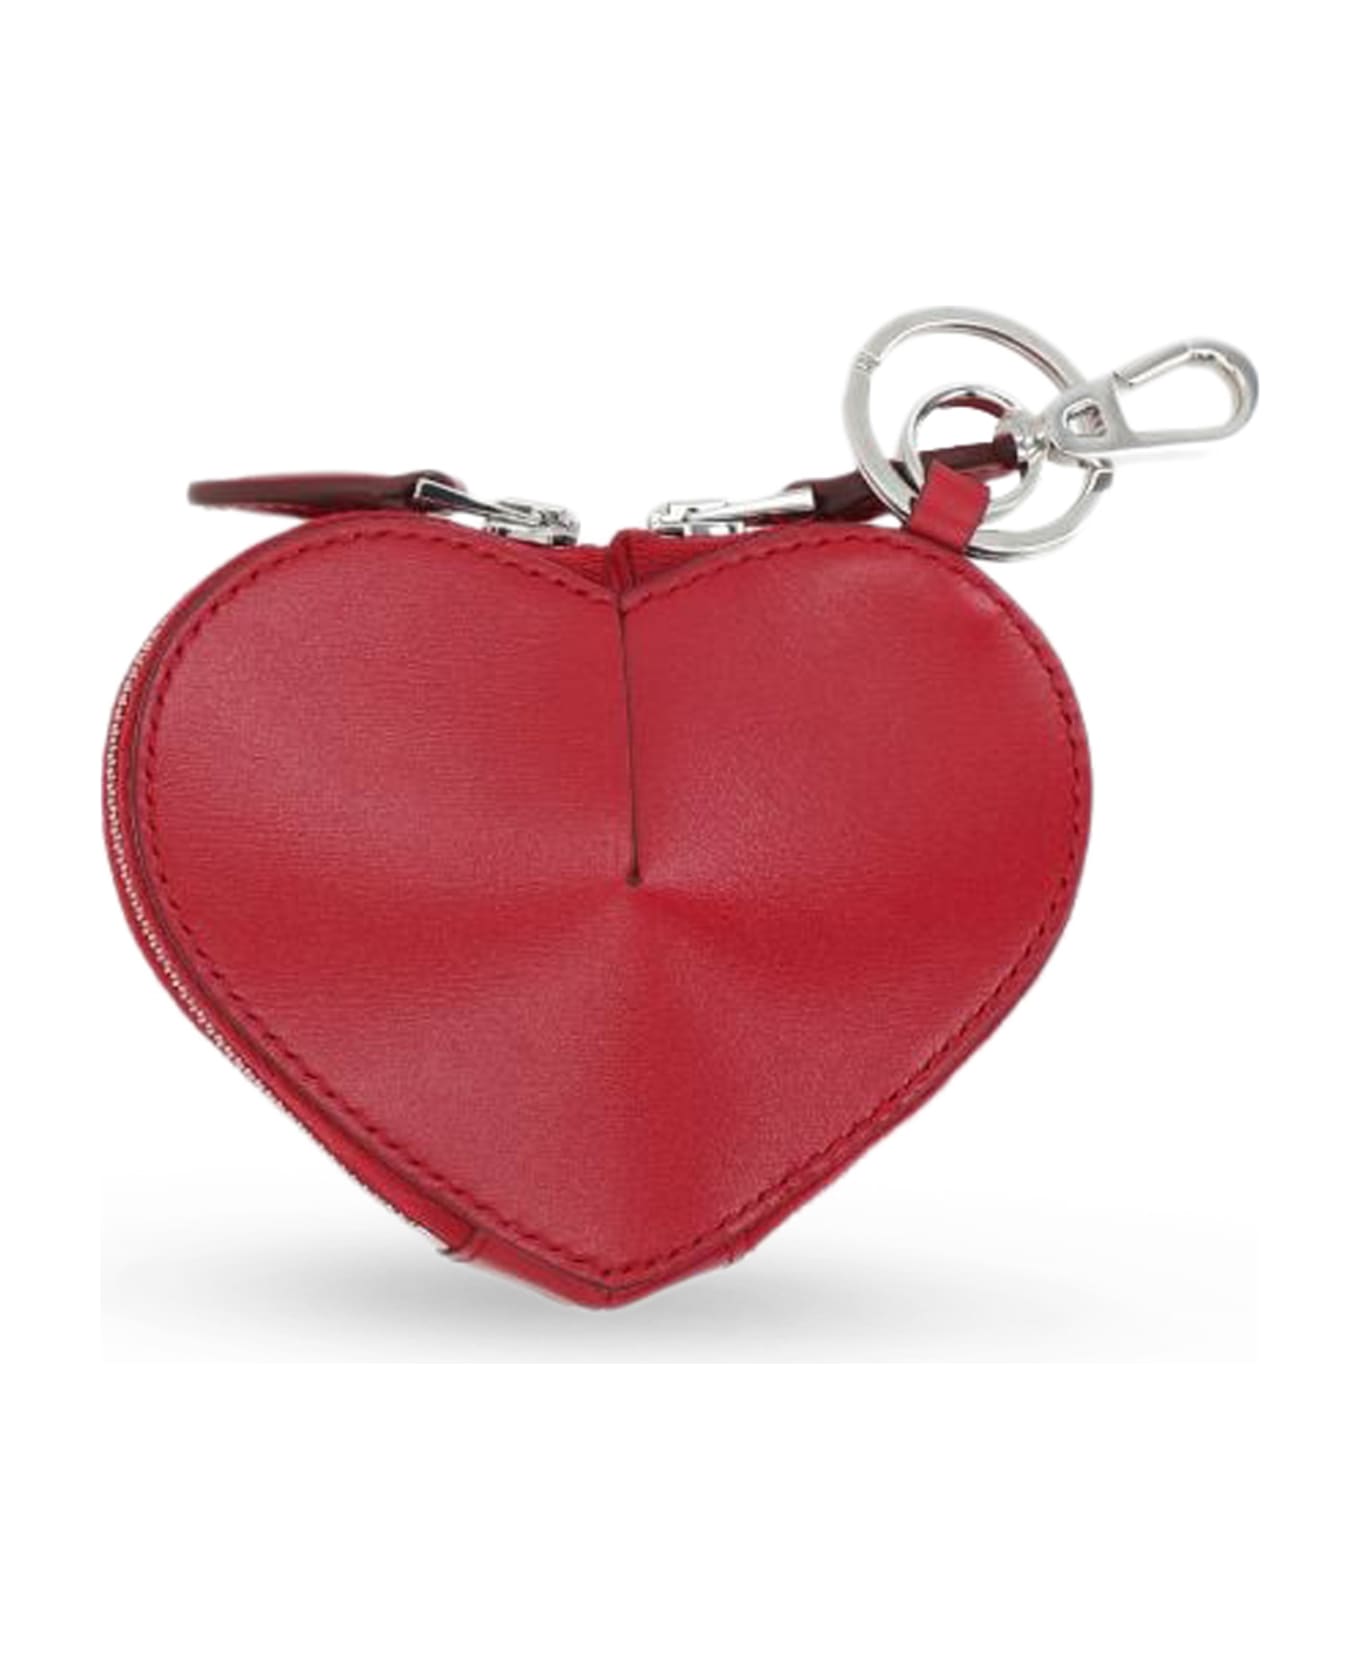 Alaia Le Coeur Mini Wallet - Laque 財布